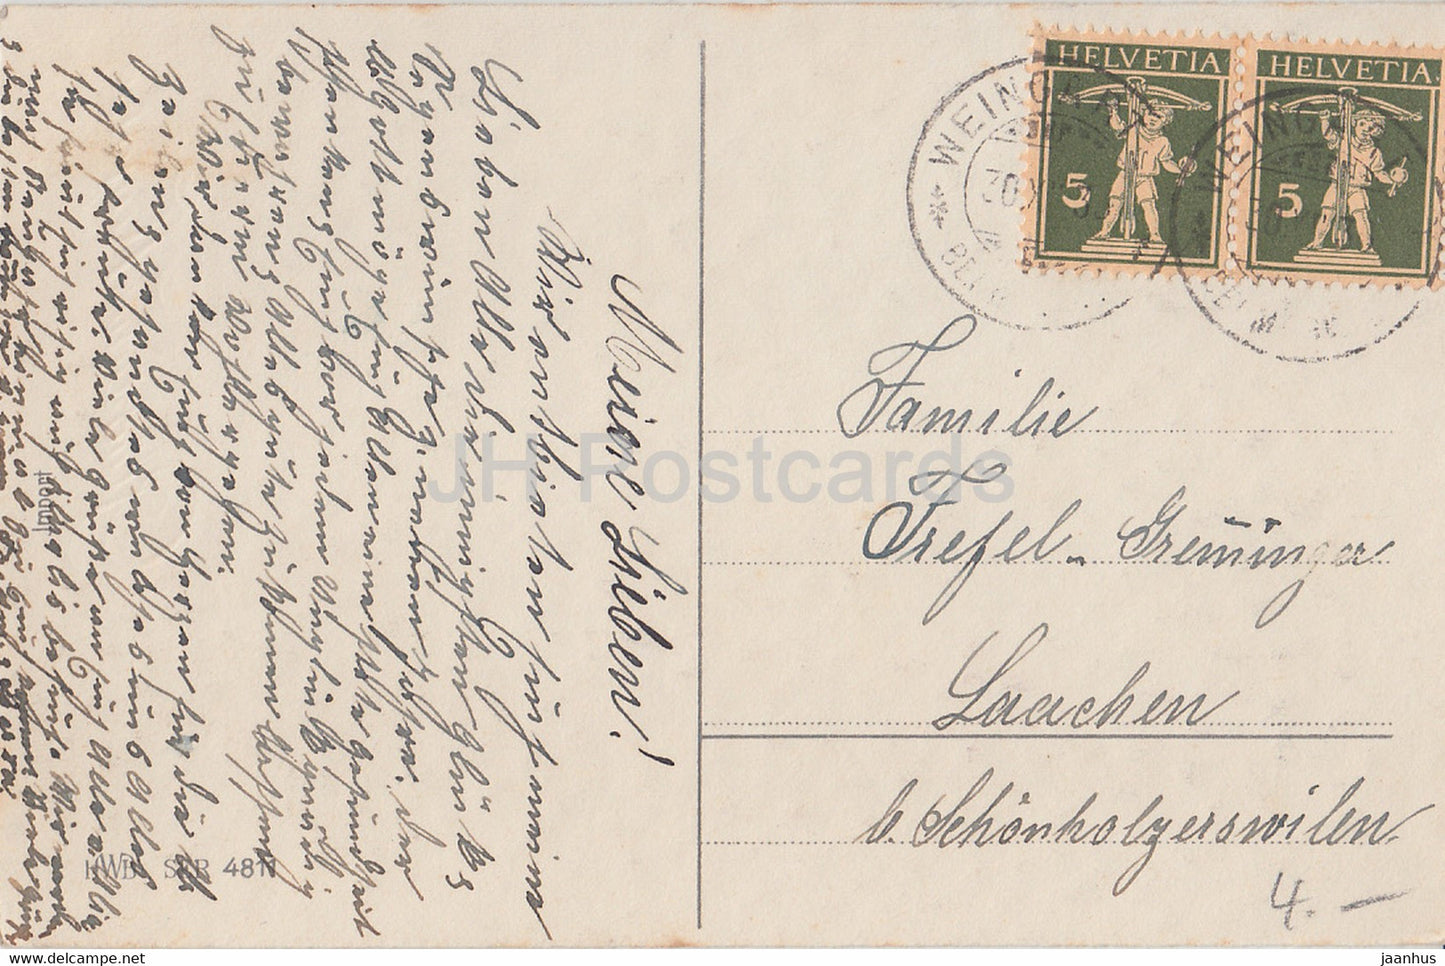 Neujahrsgrußkarte – Gluckliches Neujahr – Haus – Glocken – HWB SER 4811 alte Postkarte – 1930er Jahre – Deutschland – gebraucht